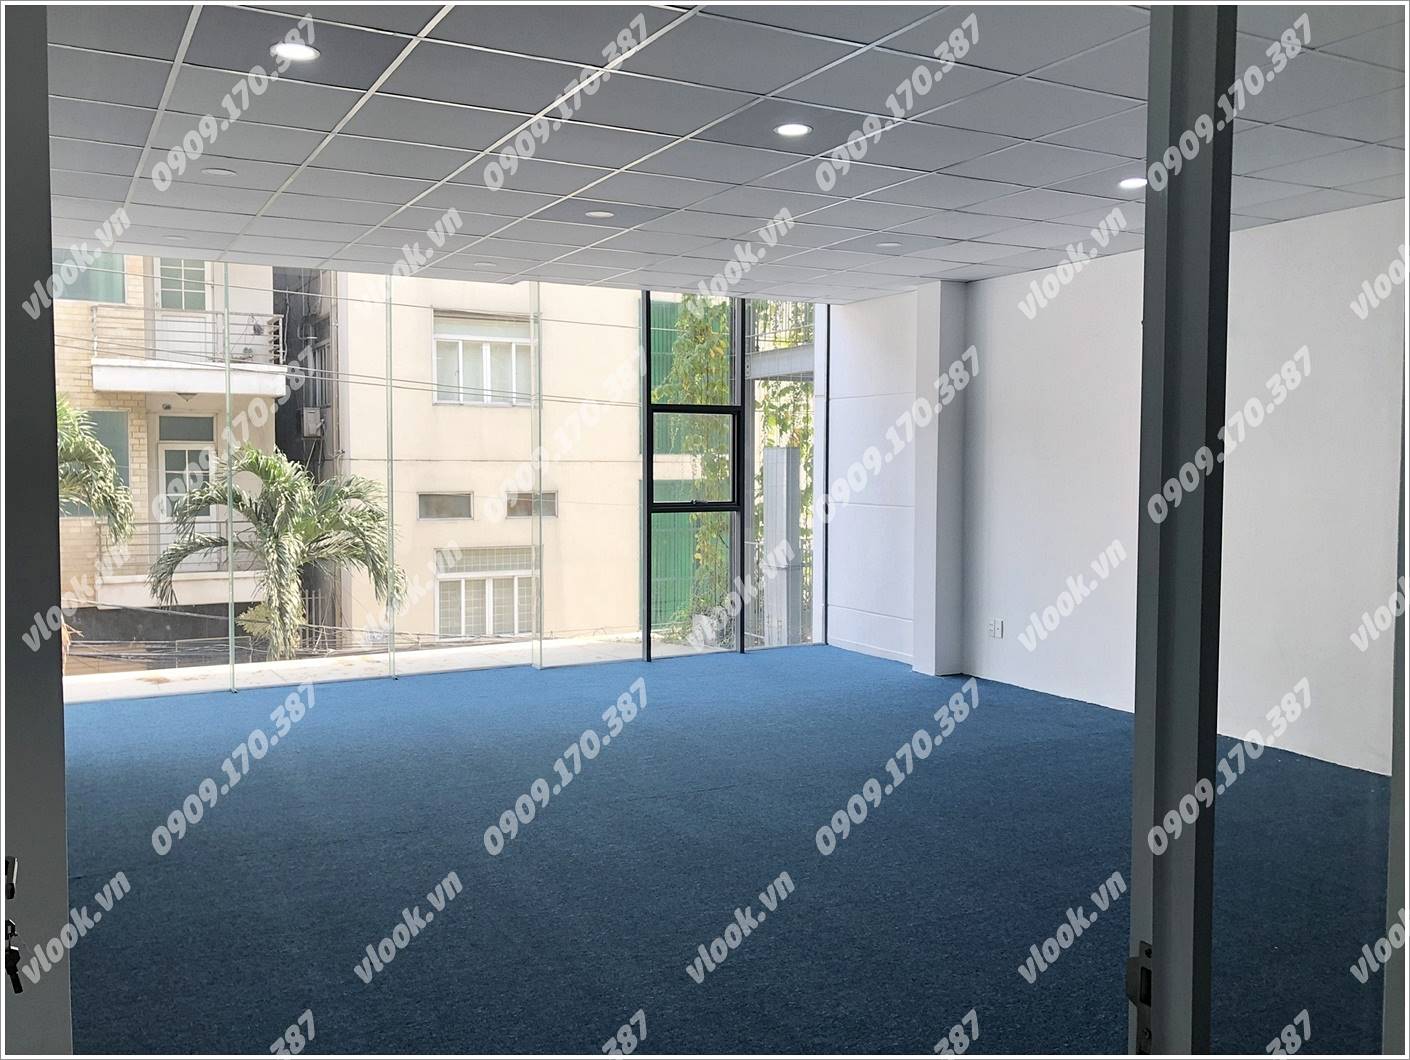 Cao ốc văn phòng cho thuê tòa nhà BKK Building, Điện Biên Phủ, Quận Bình Thạnh, TPHCM - vlook.vn